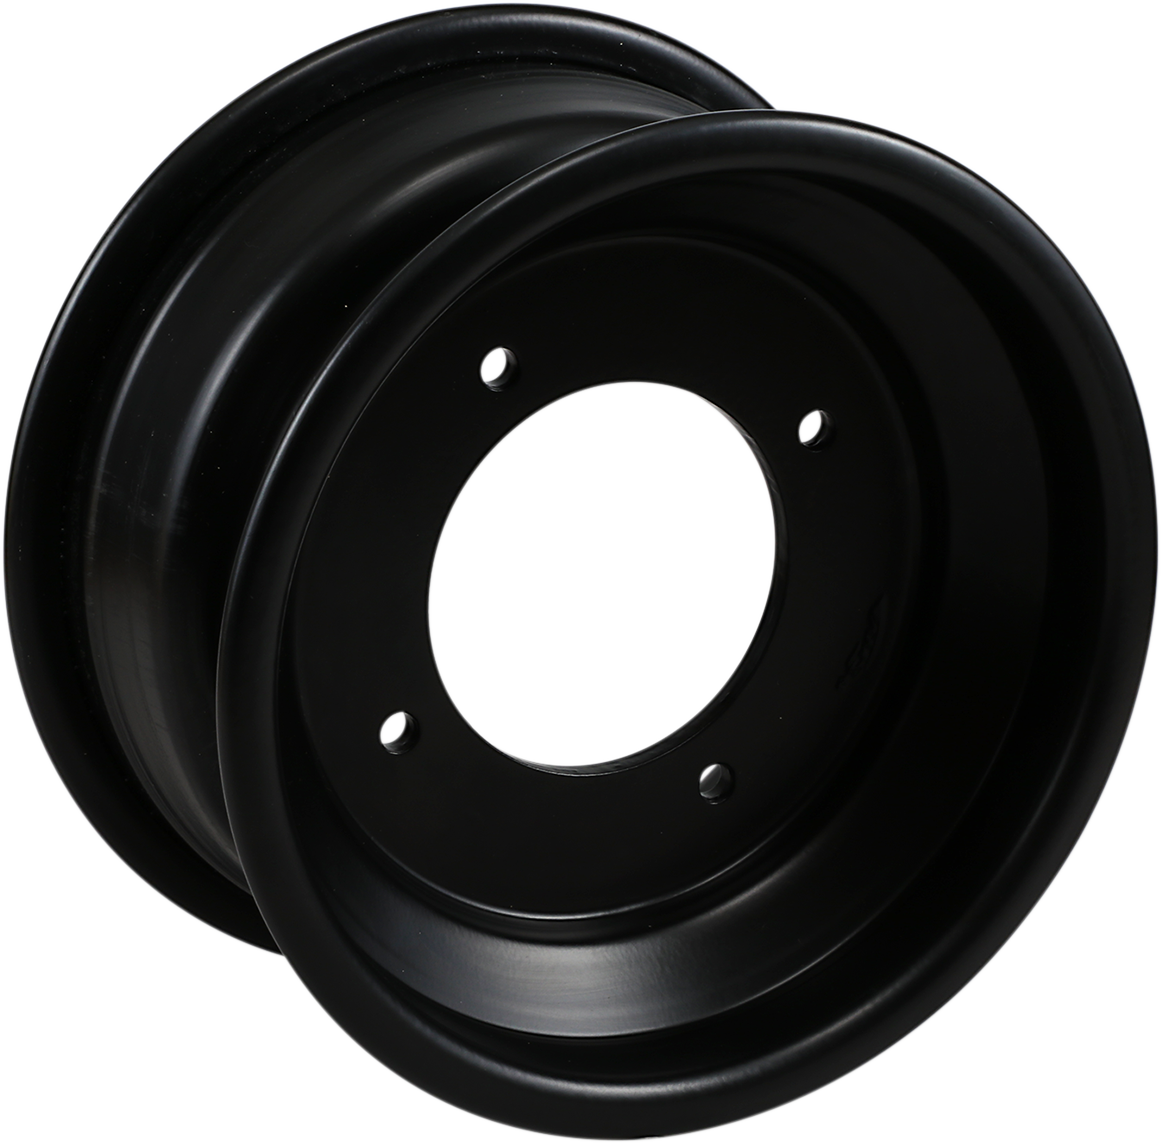 AMS Rolled-Lip Spun Wheel - Rear - Black - 9x8 - 4/115 - 3+5 261RL98115B3